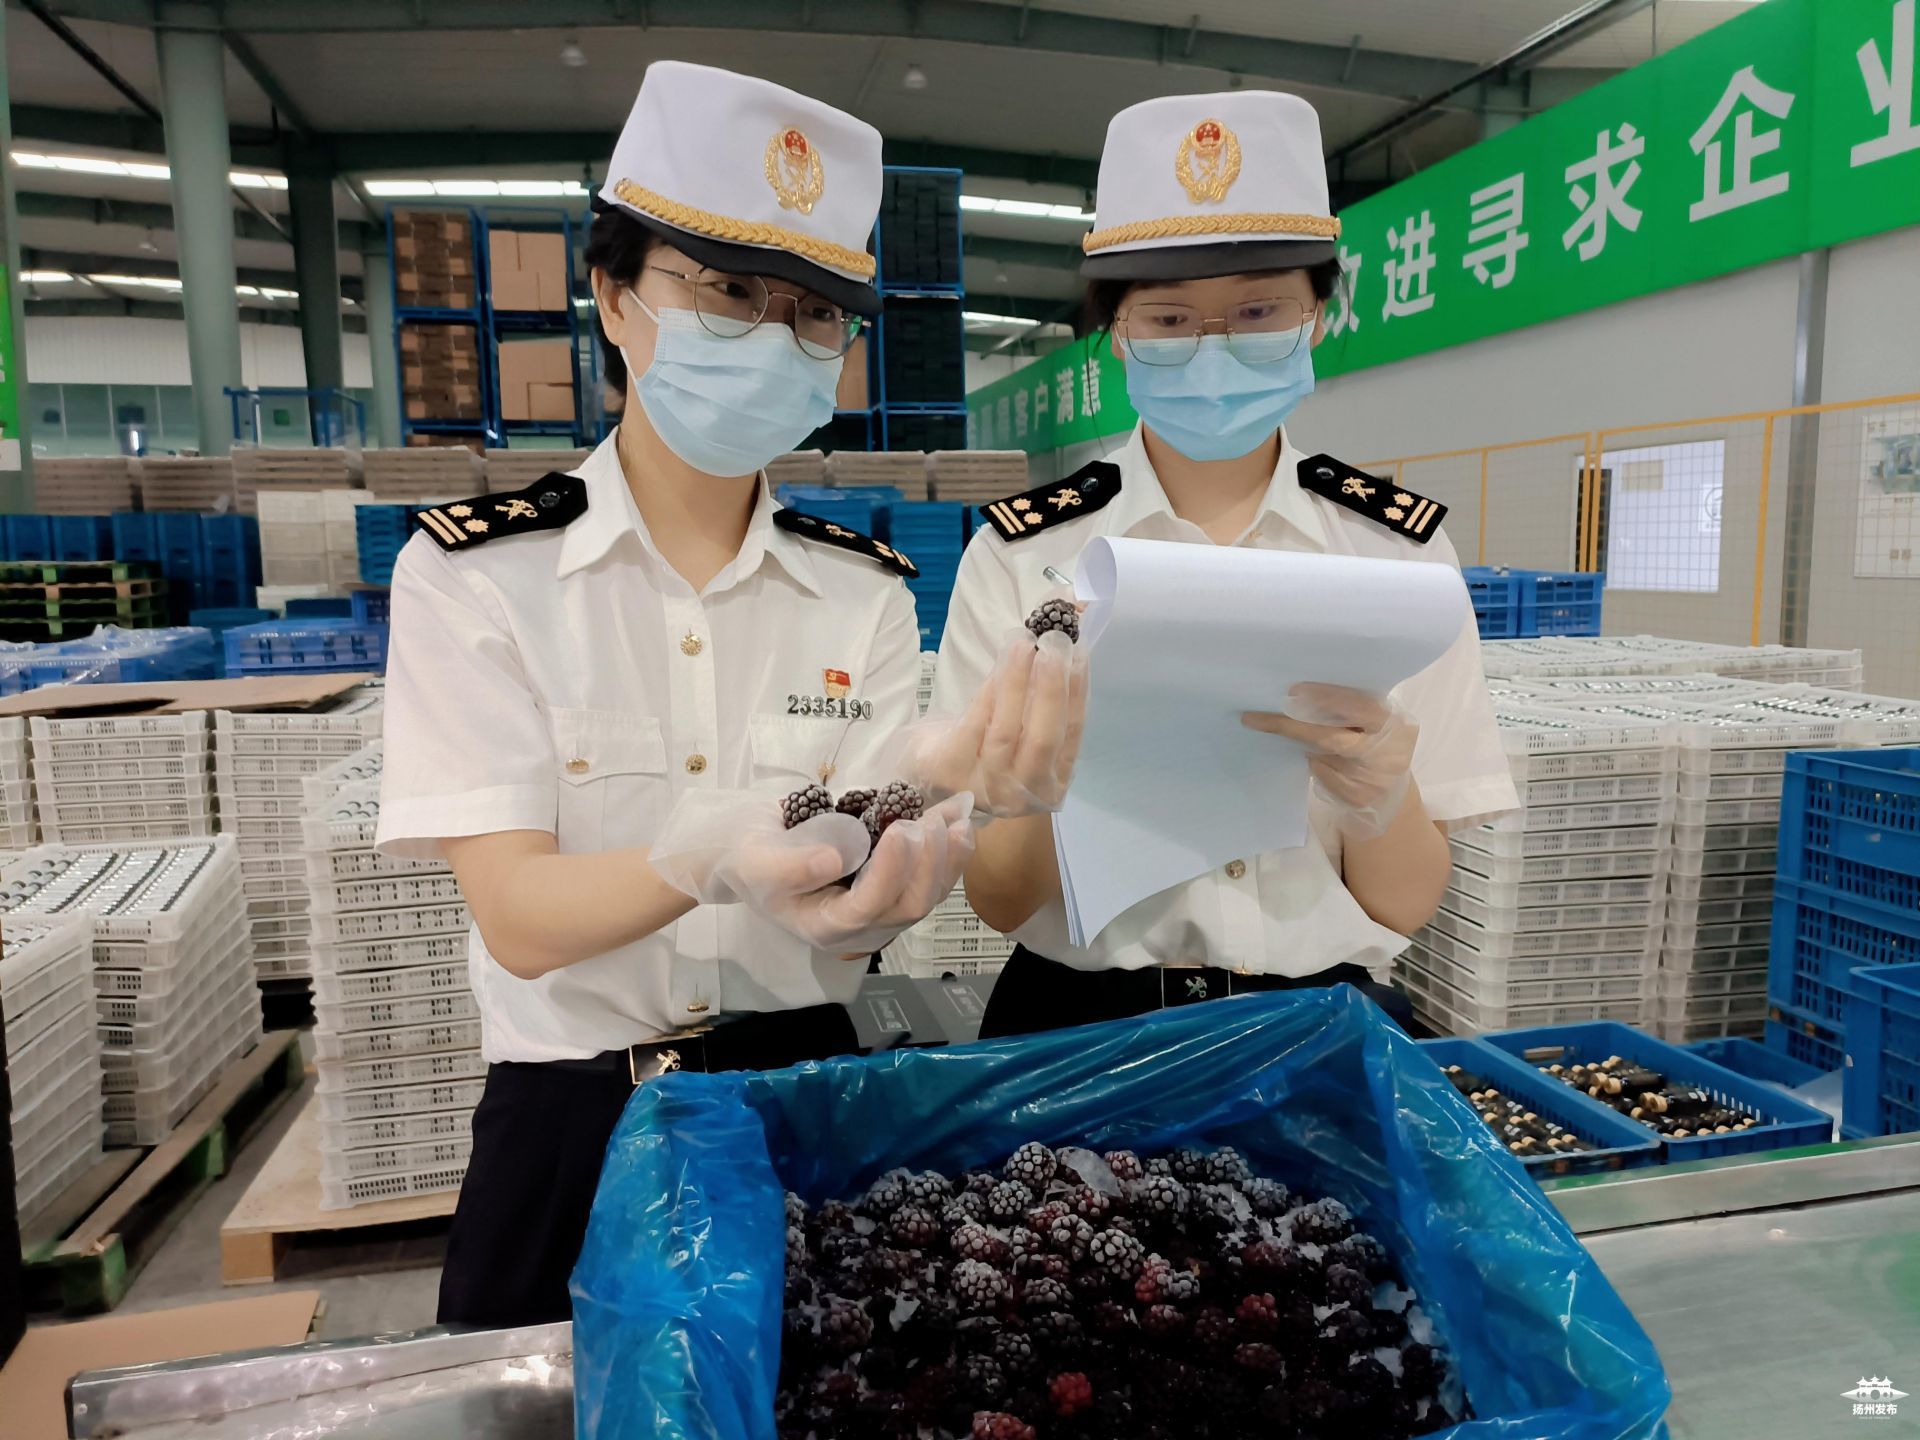 扬州海关工作人员助力扬州黑莓出口。胡文静 摄影